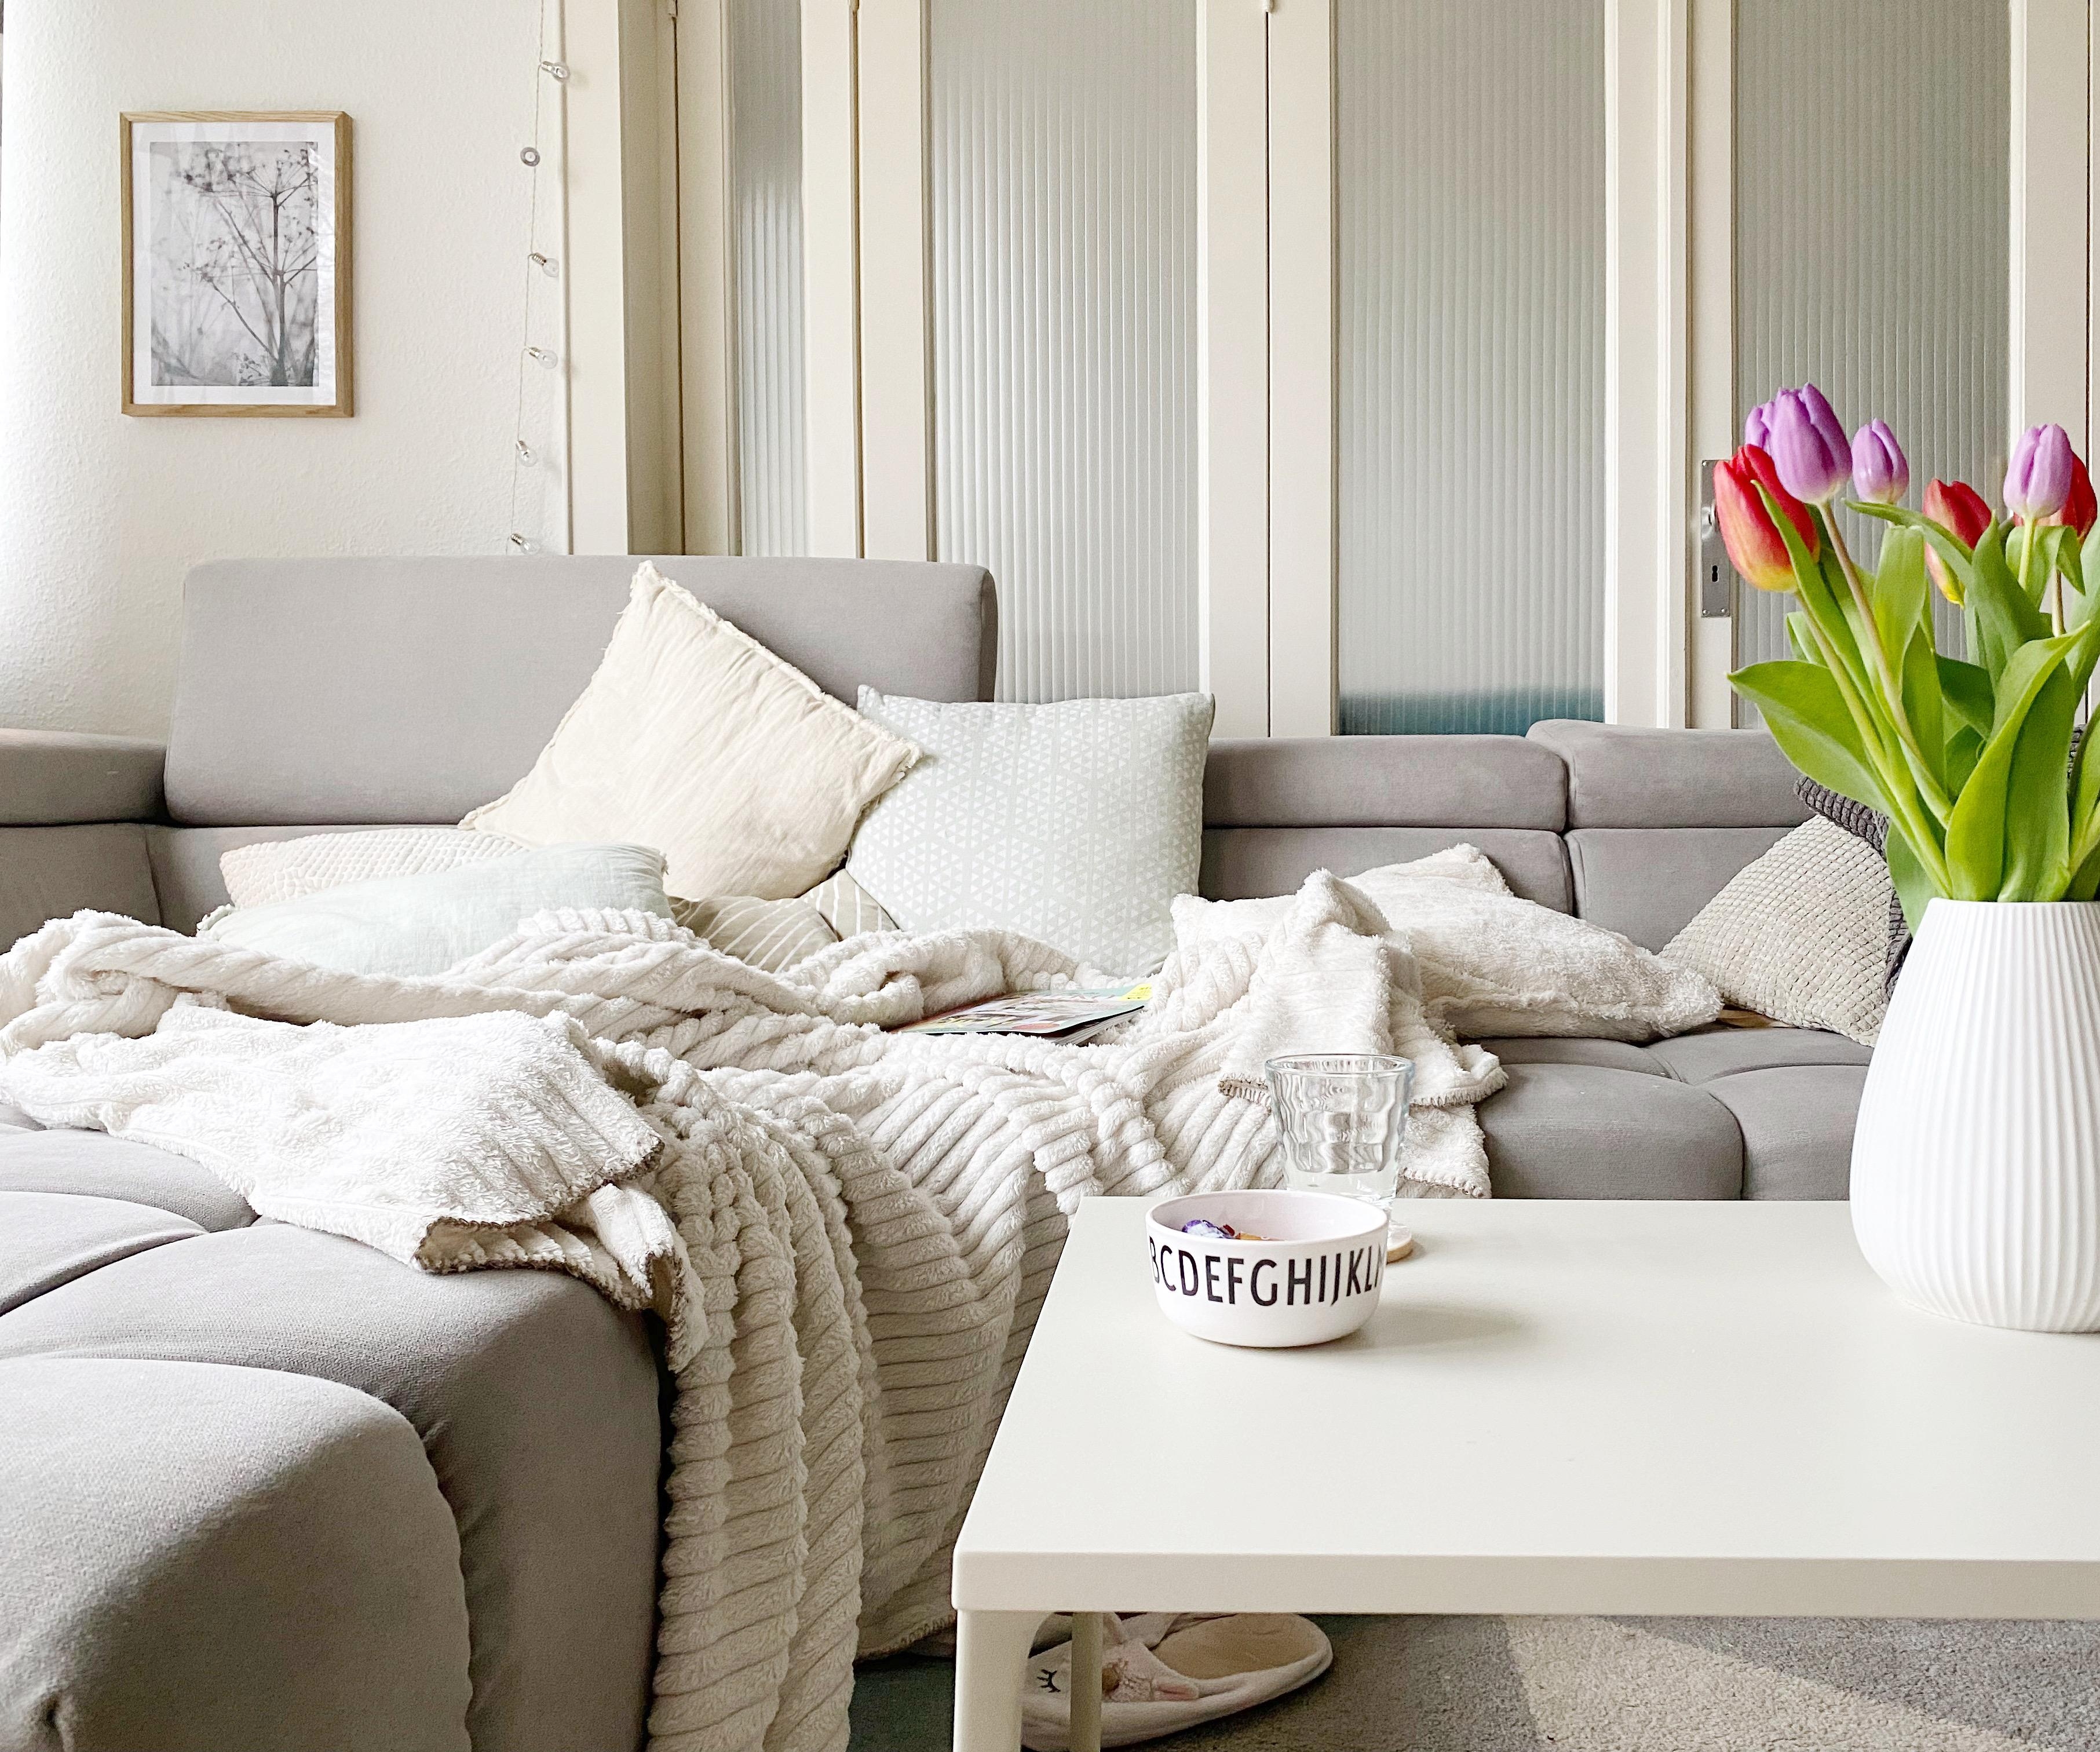 Weiß, Grau, Beige und viele Pastelltöne - das ist der Farbcode, der sich durch unsere Wohnung zieht 💛 #livingroom